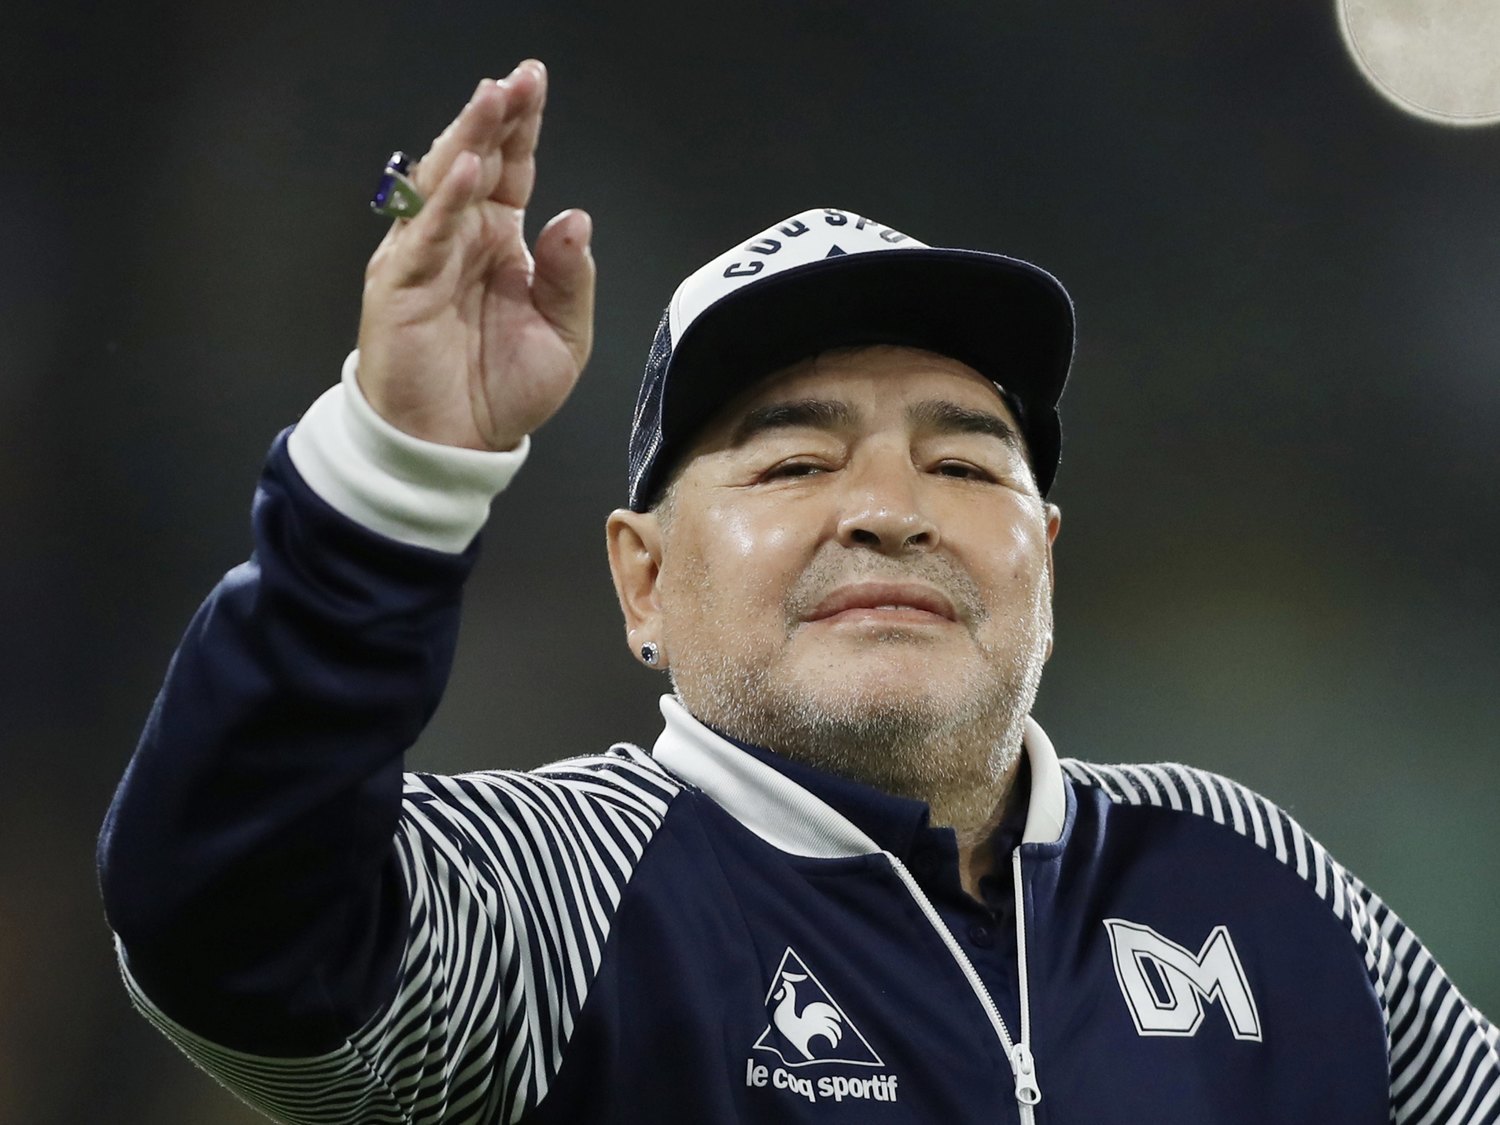 Muere Diego Armando Maradona a los 60 años